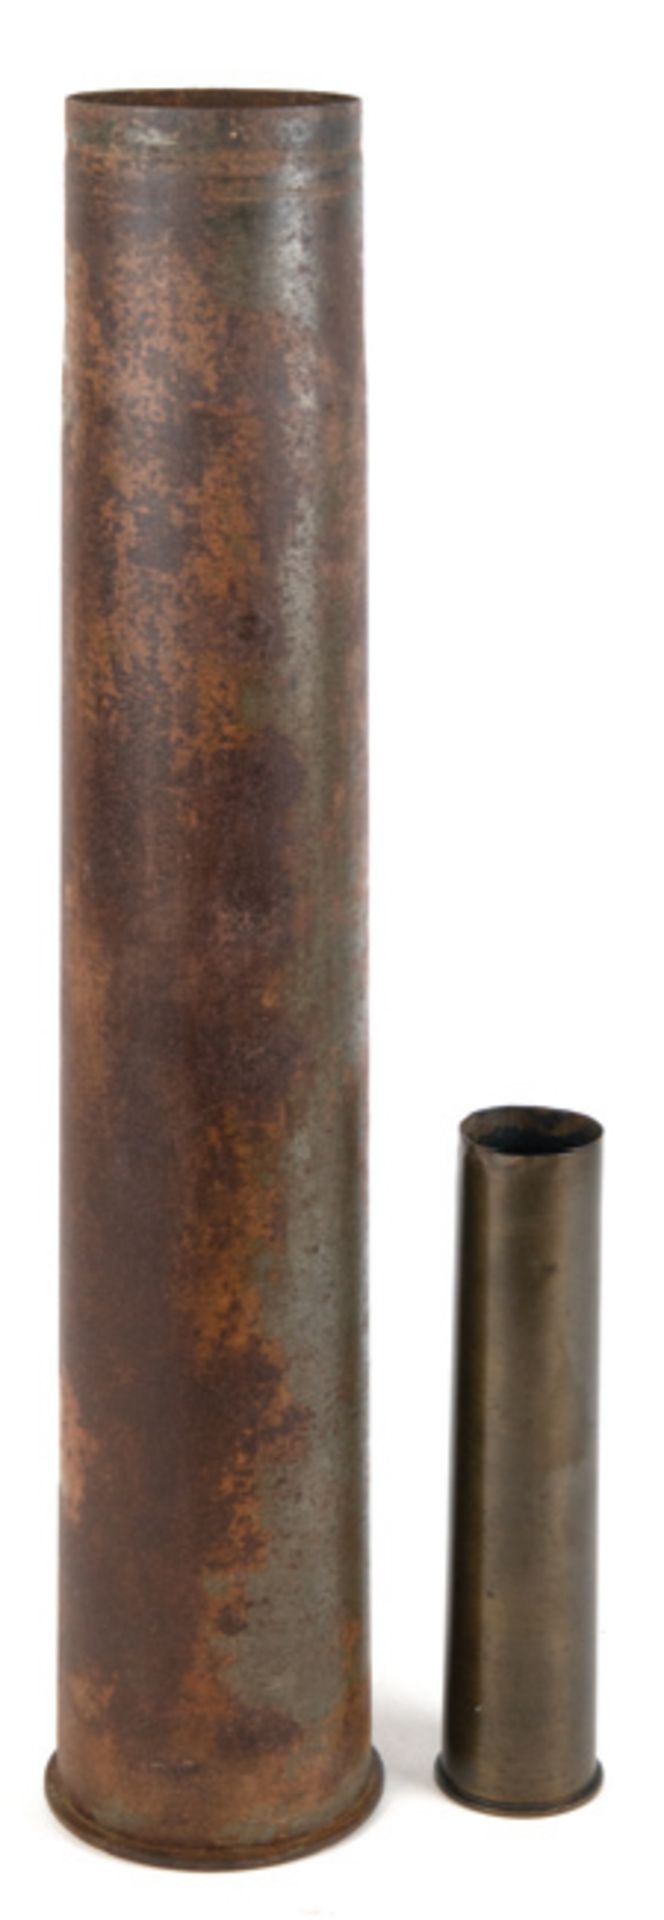 2 Granathülsen, Eisen bzw. Messing, unterseitig dat. 1937 und 1941, H. 23 cm und 57 cm, Dm. 5 cm un